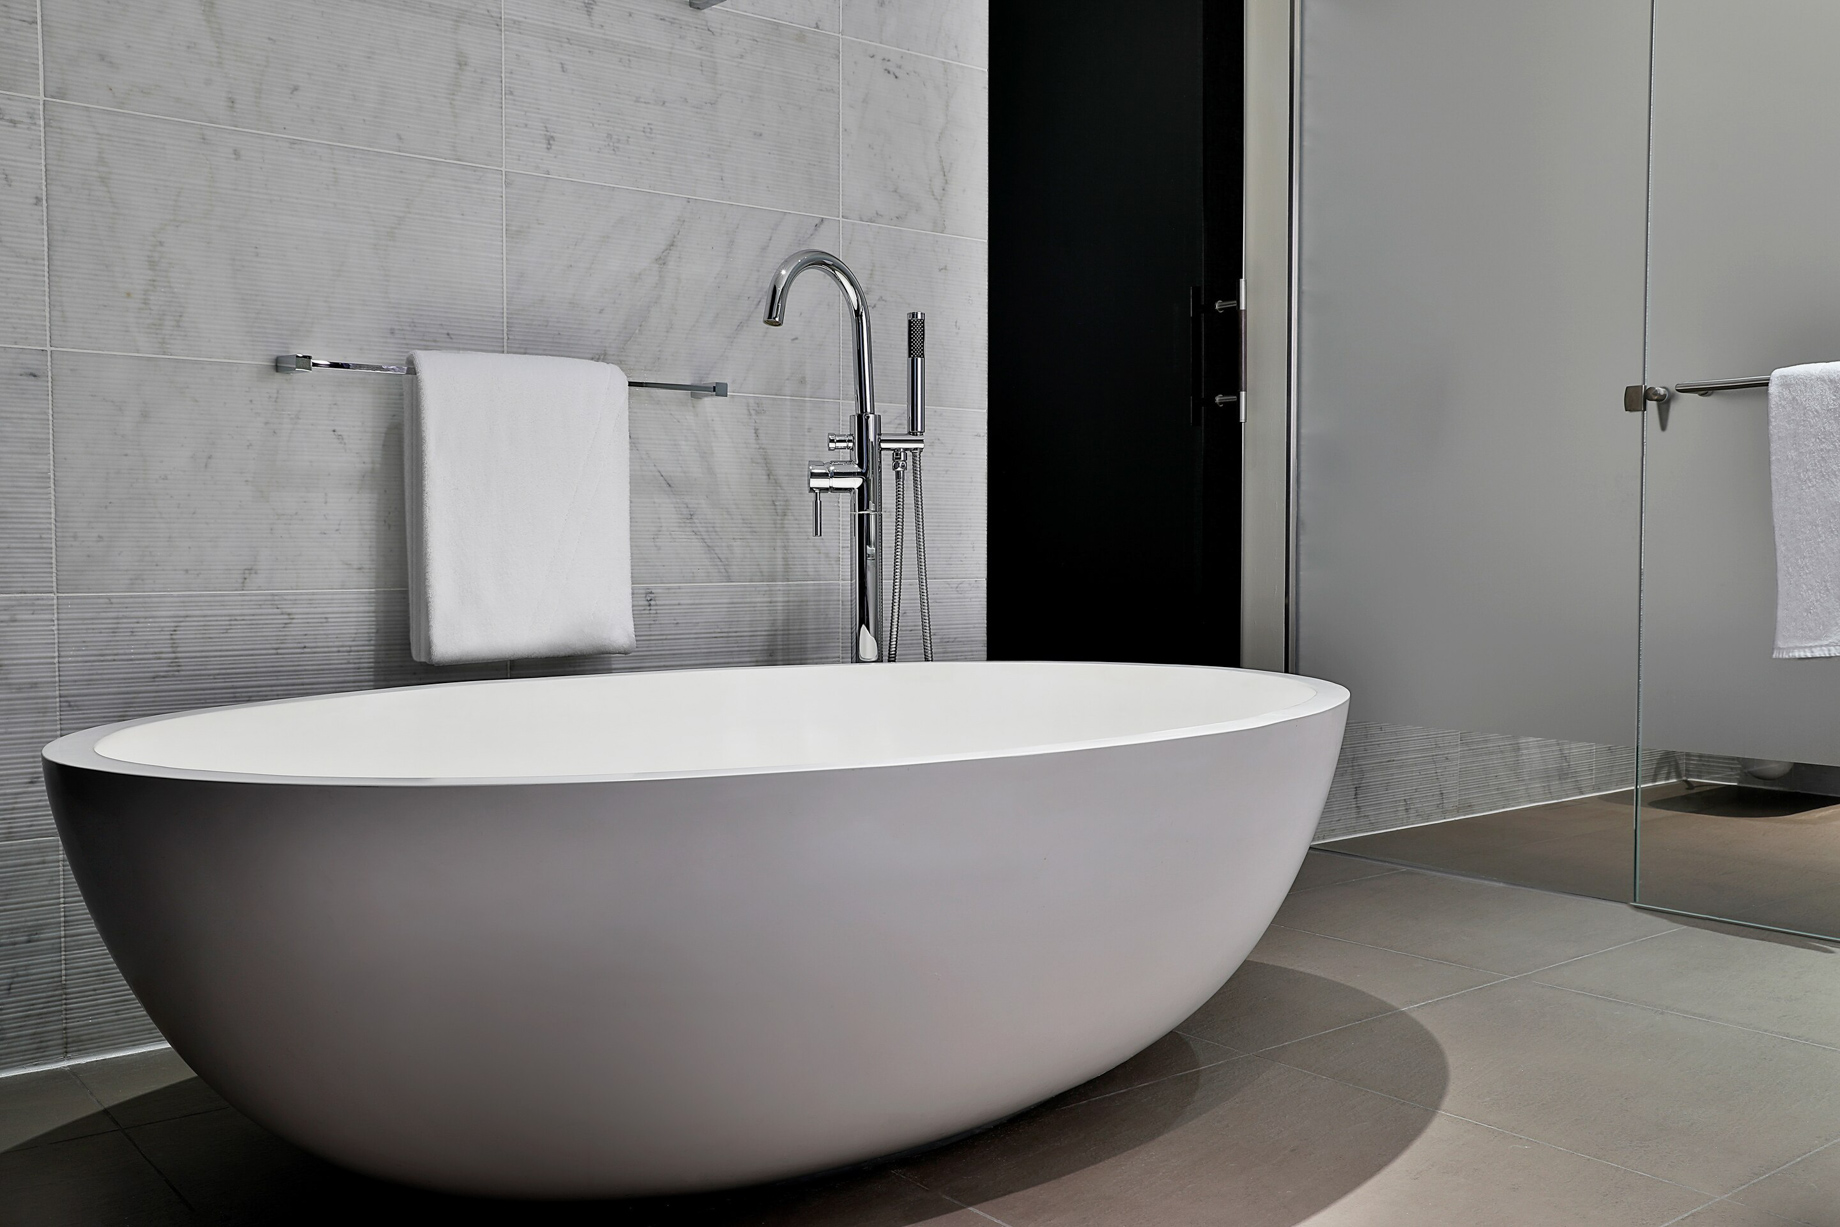 W Abu Dhabi Yas Island Hotel – Abu Dhabi, UAE – Fantastic Suite Bathroom Tub